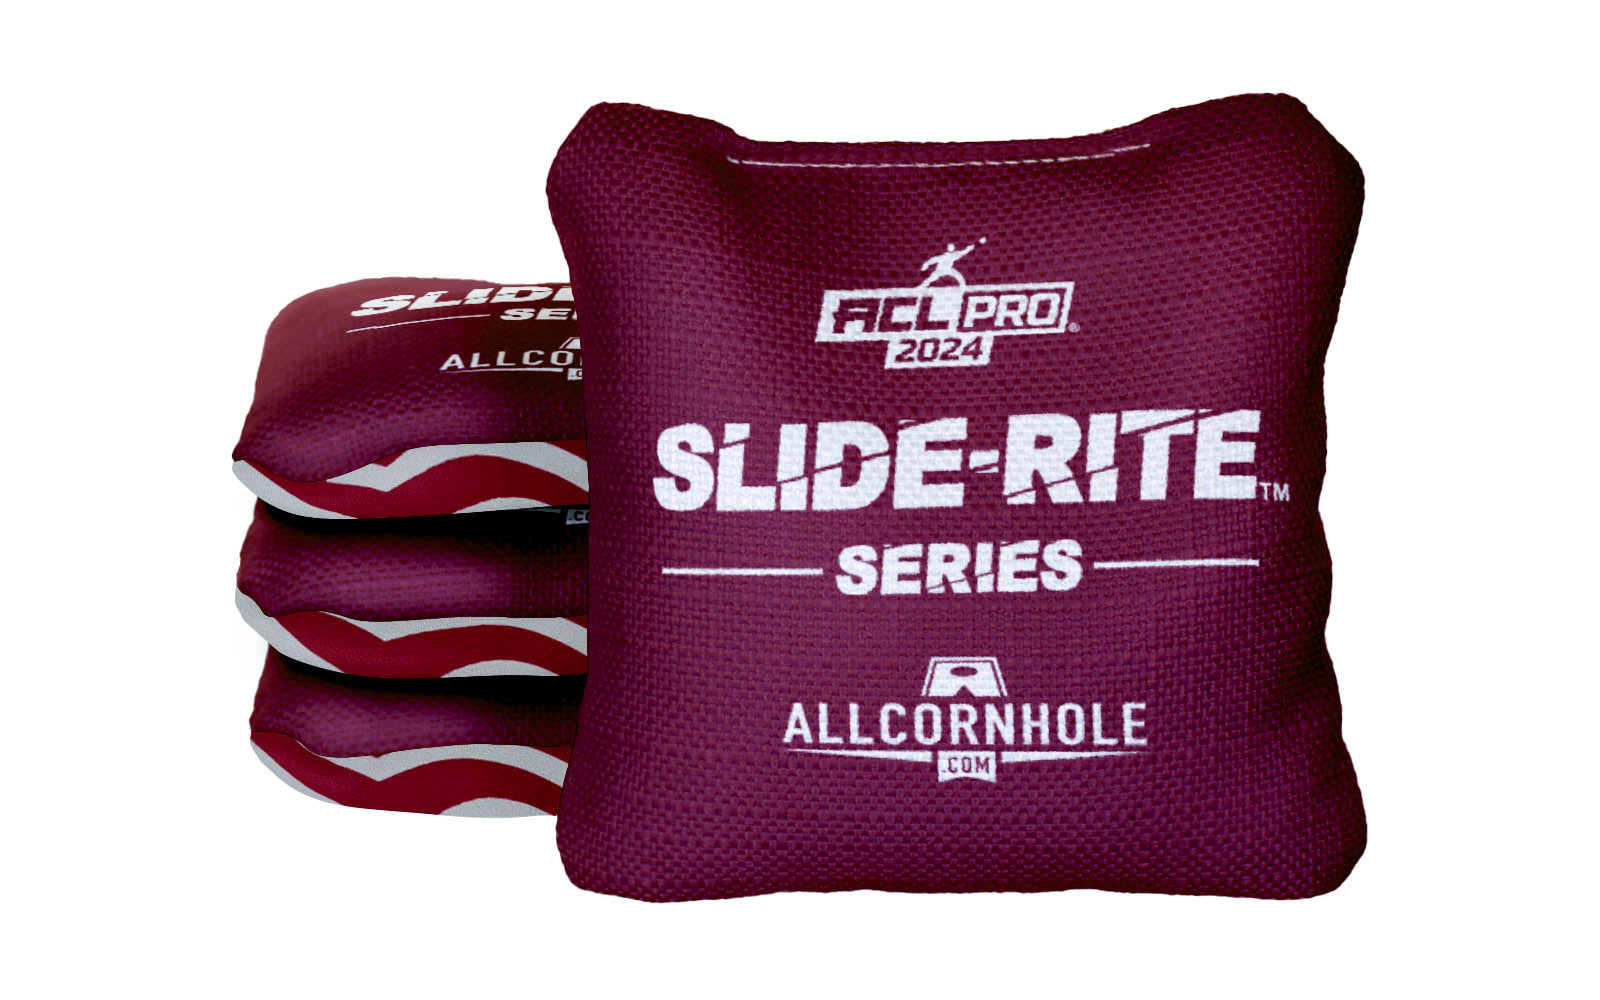 Officially Licensed Collegiate Cornhole Bags - AllCornhole Slide Rite - Set of 4 - Mississippi State University